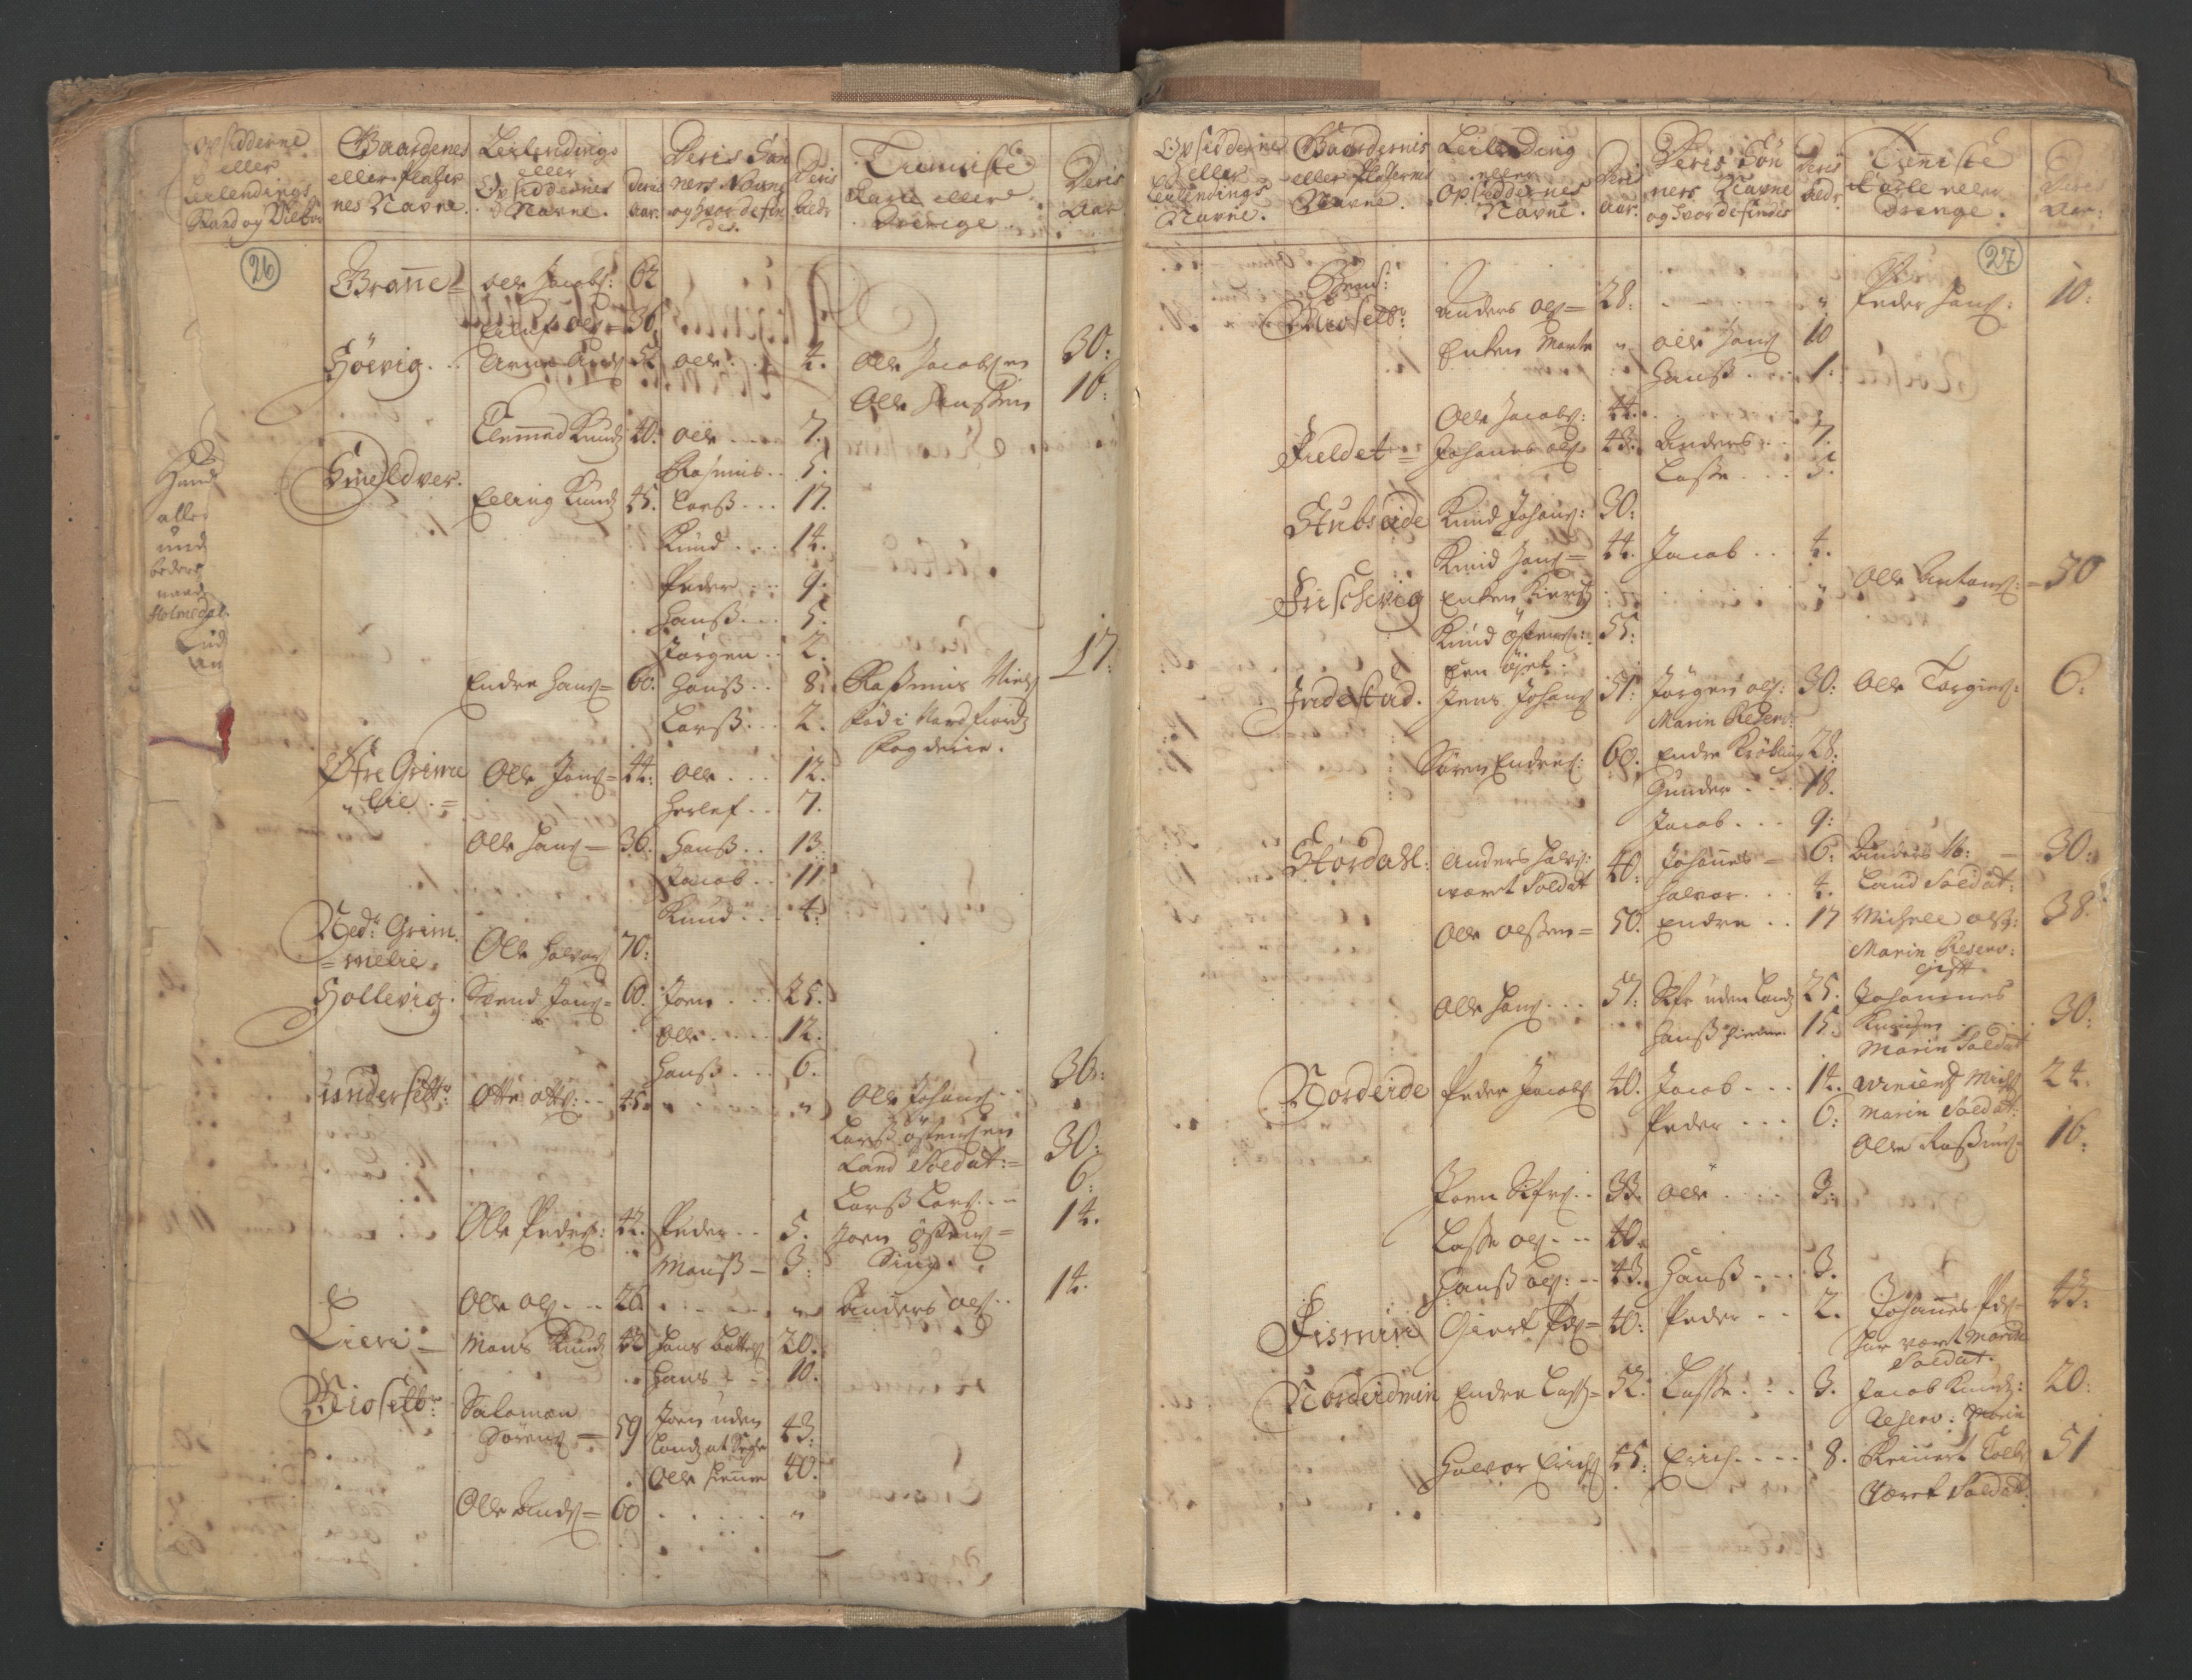 RA, Manntallet 1701, nr. 9: Sunnfjord fogderi, Nordfjord fogderi og Svanø birk, 1701, s. 26-27